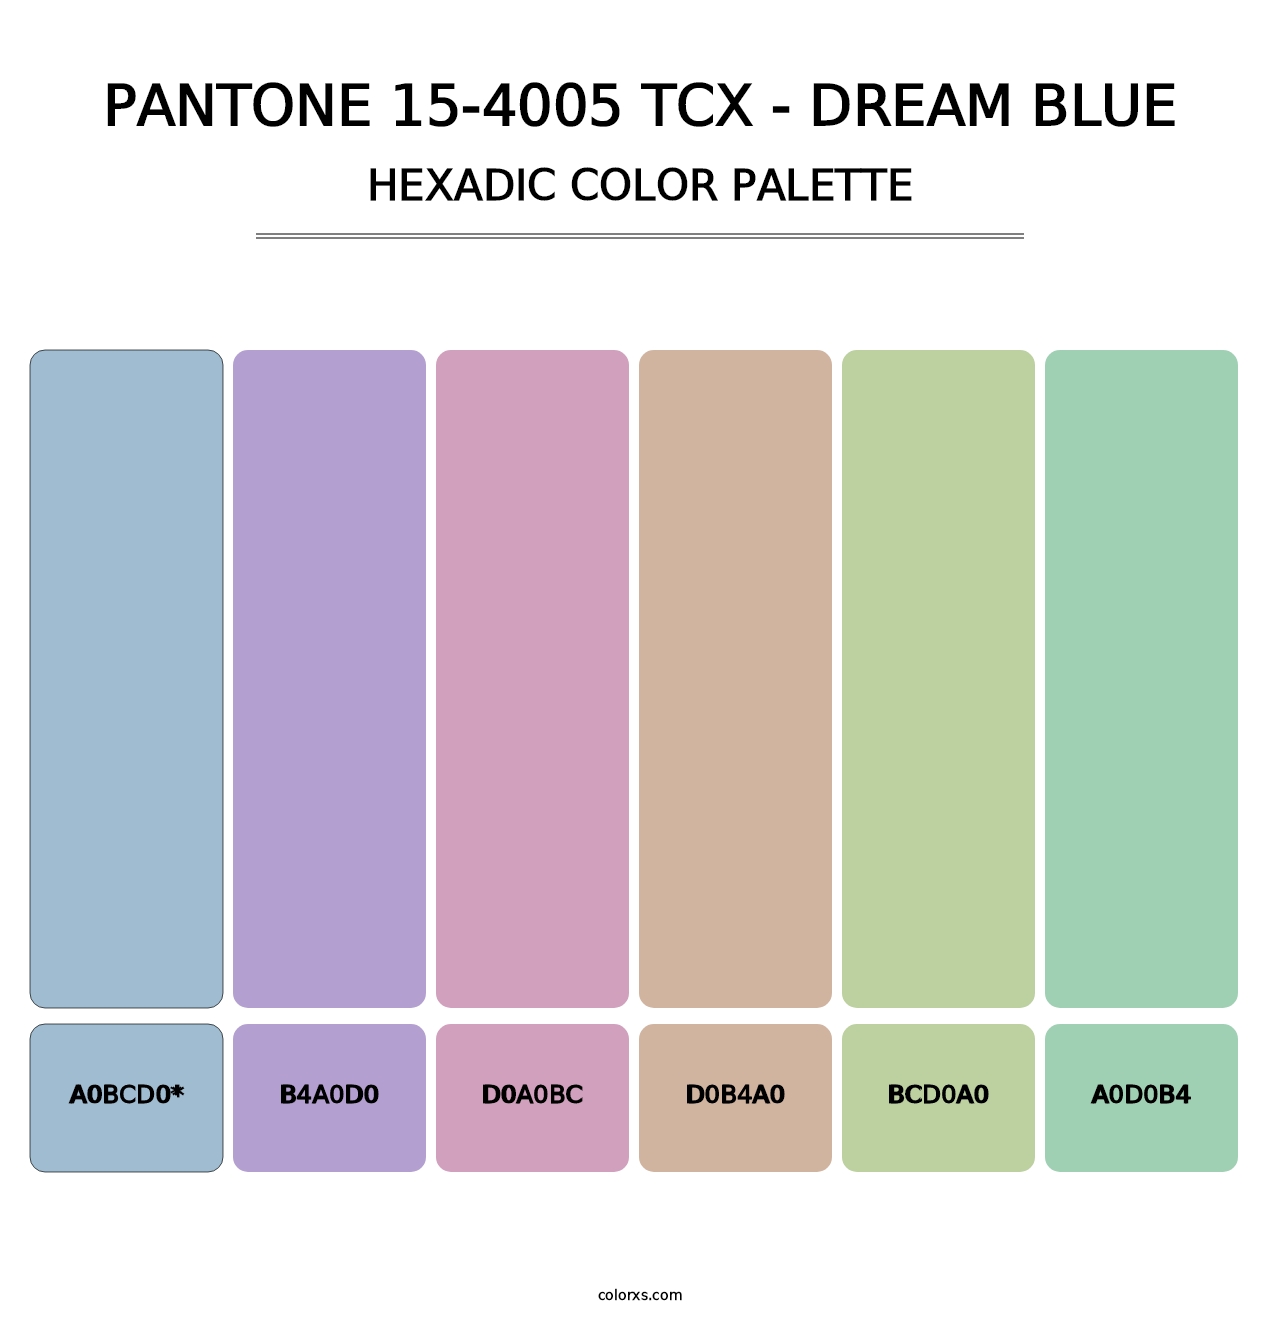 PANTONE 15-4005 TCX - Dream Blue - Hexadic Color Palette